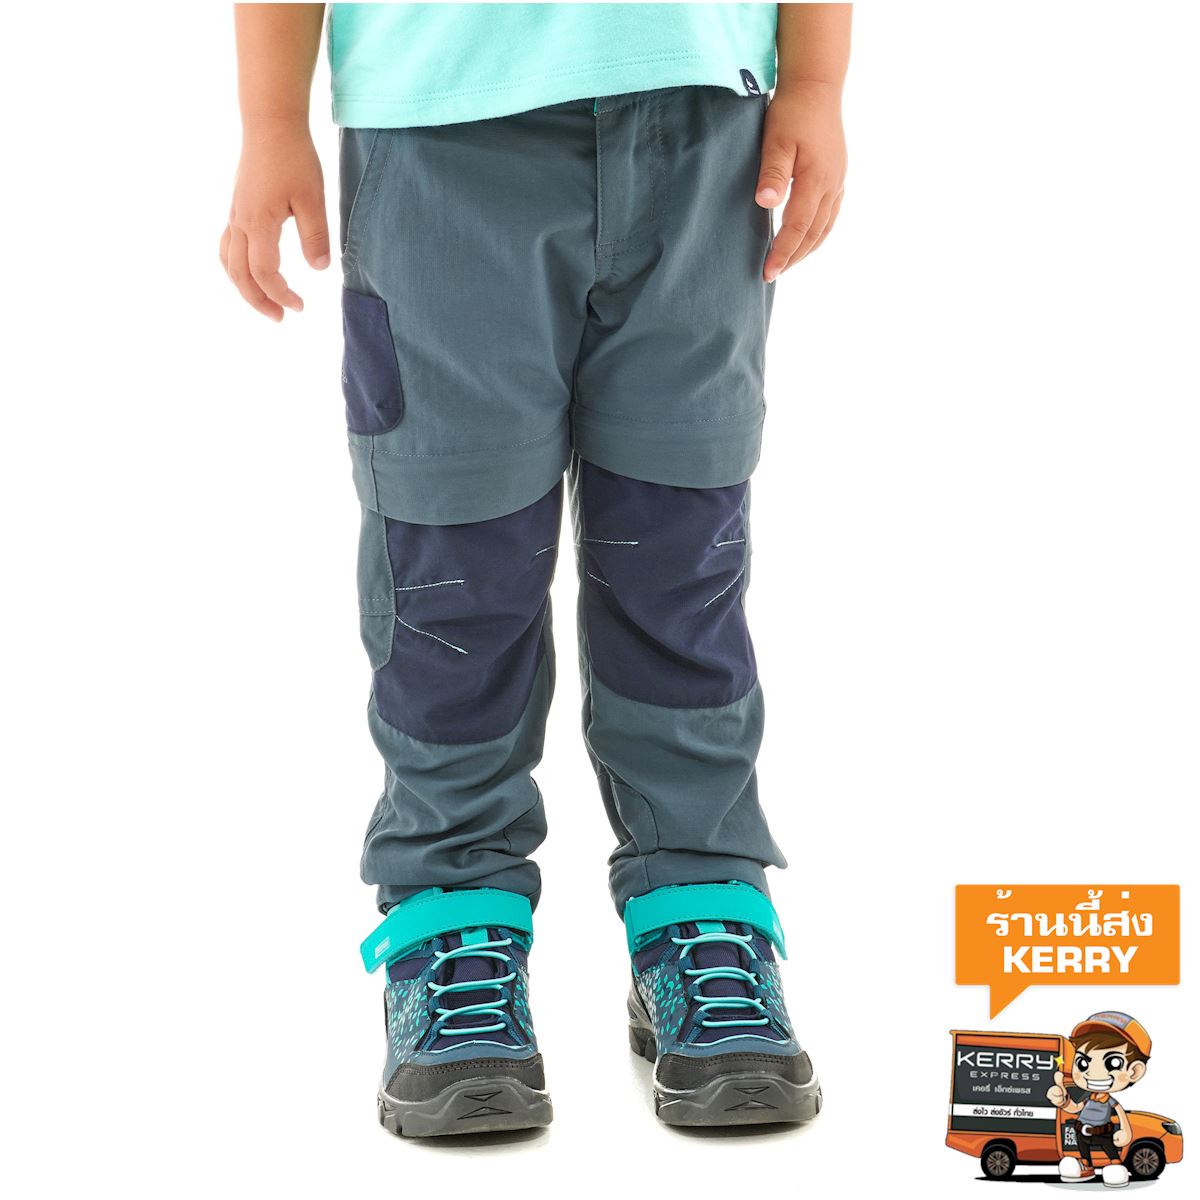 กางเกงขายาวแบบถอดขาได้สำหรับเด็กใส่เดินป่ารุ่น MH500 (สีเทา/น้ำเงิน) เด็กเล็ก 0 ถึง 4 ปี เดินป่า กางเกง เสื้อผ้า กางเกงกีฬาขายาว